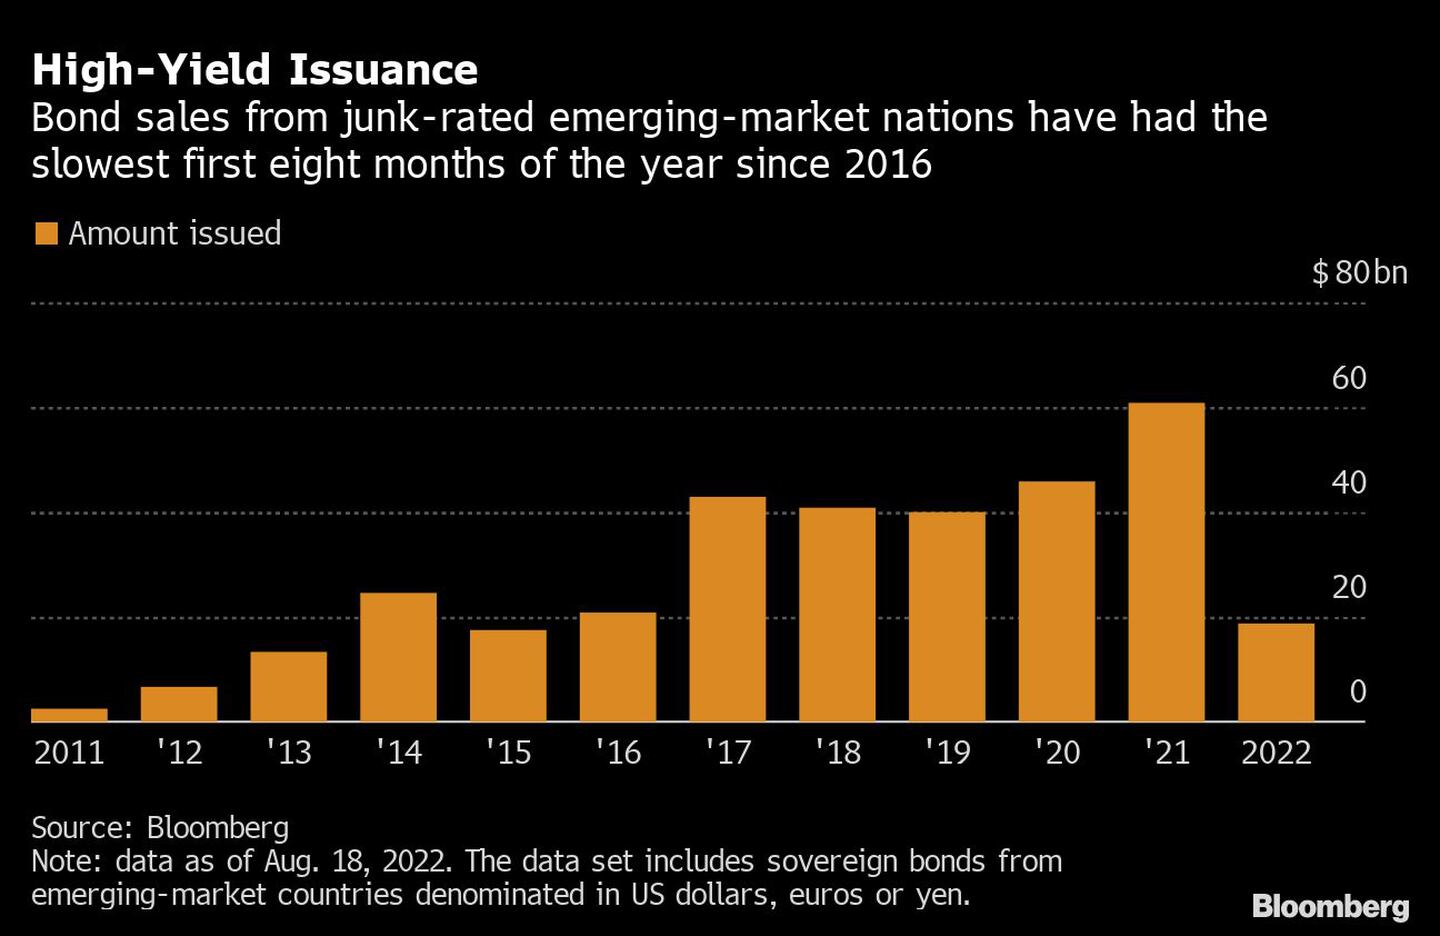 Las ventas de bonos de las naciones de mercados emergentes con calificación de basura han tenido los primeros ocho meses del año más lentos desde 2016dfd